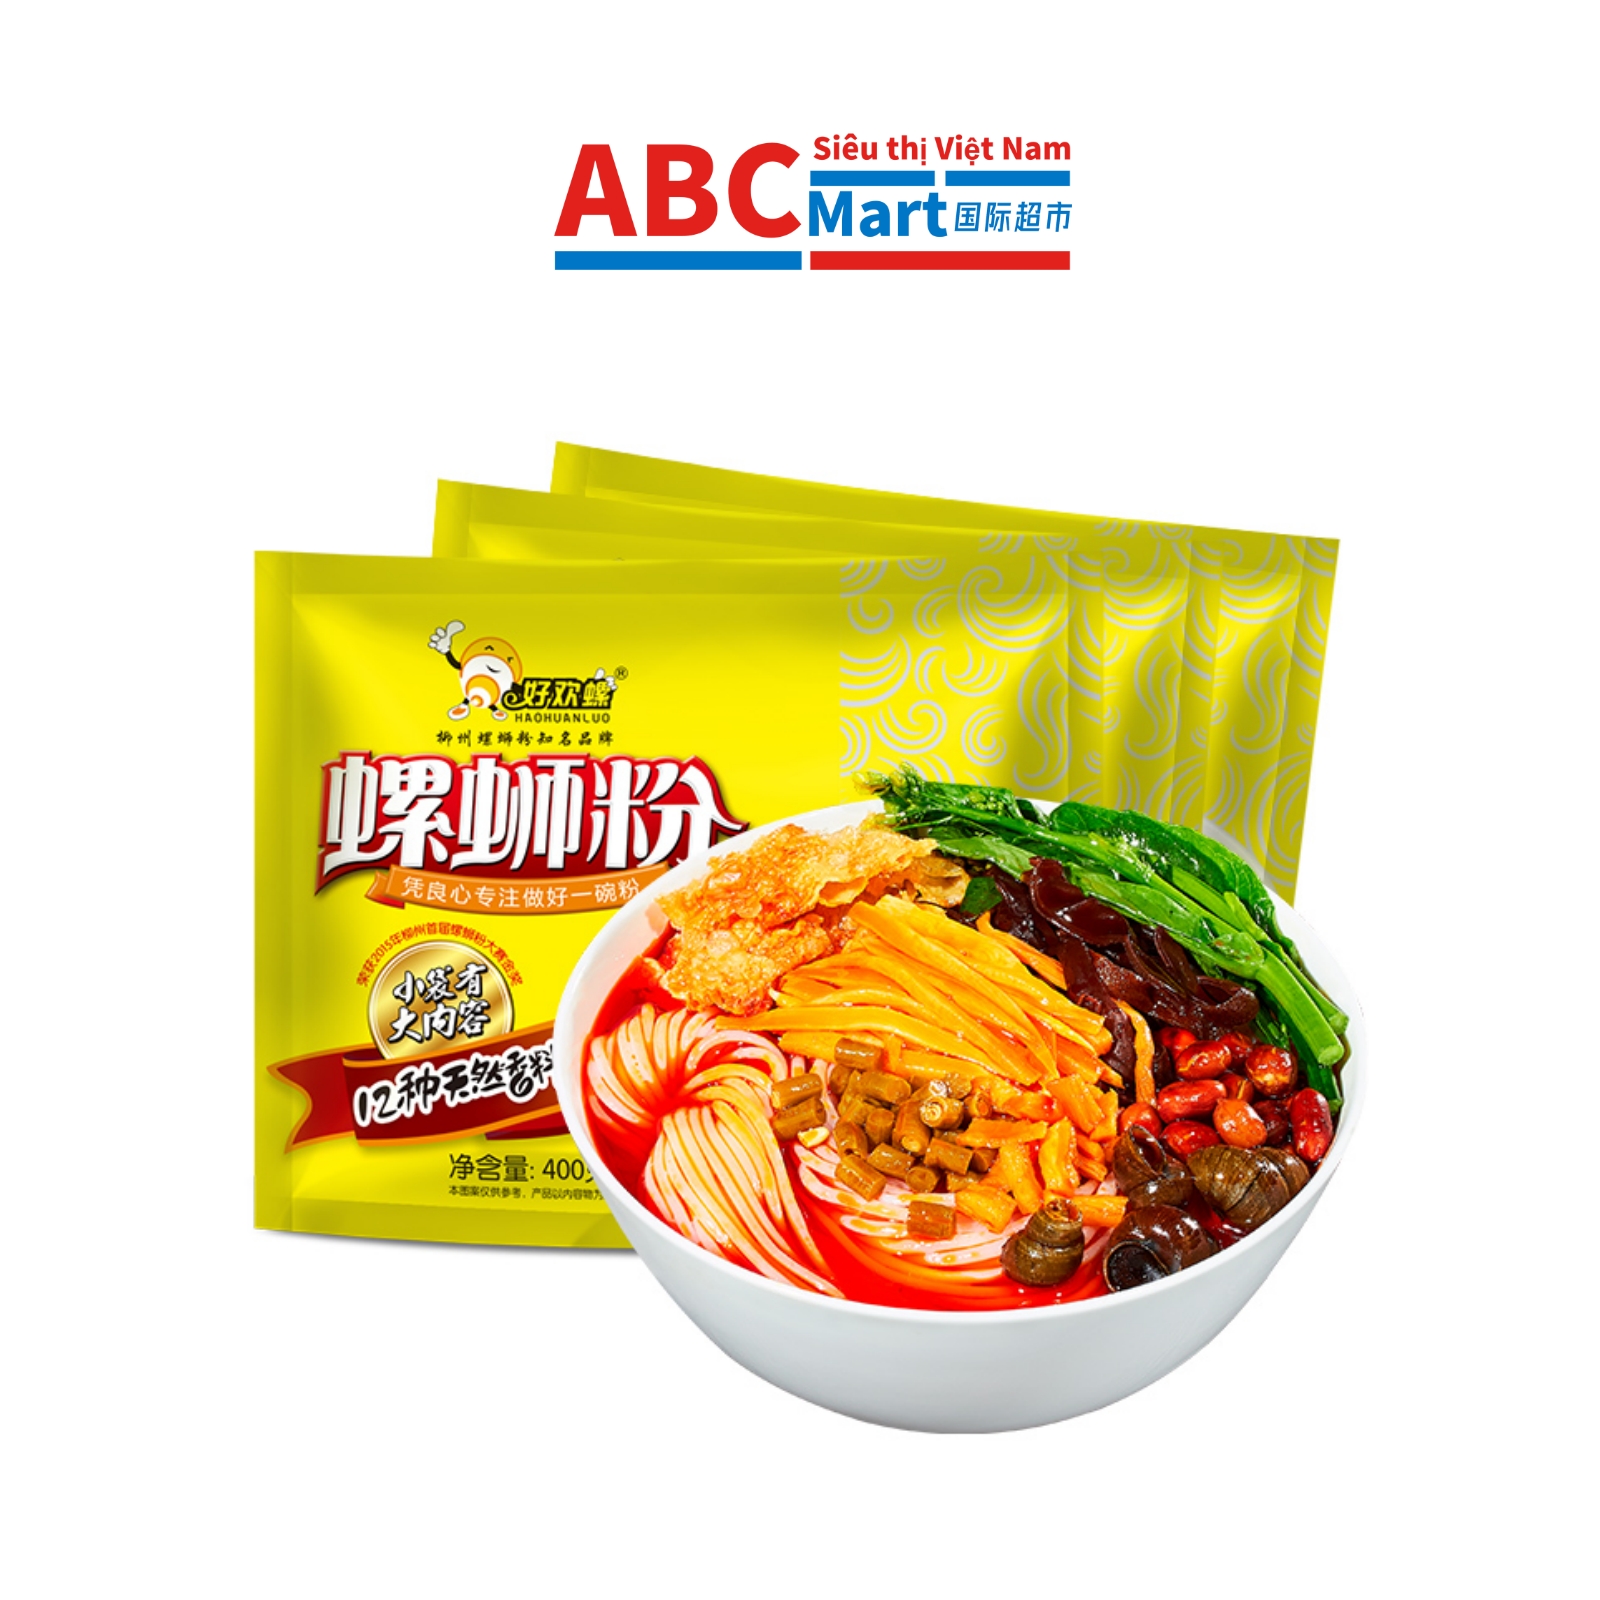 【中国-好欢螺螺蛳粉400g】加量柳州正宗美食-ABCMart 国际超市